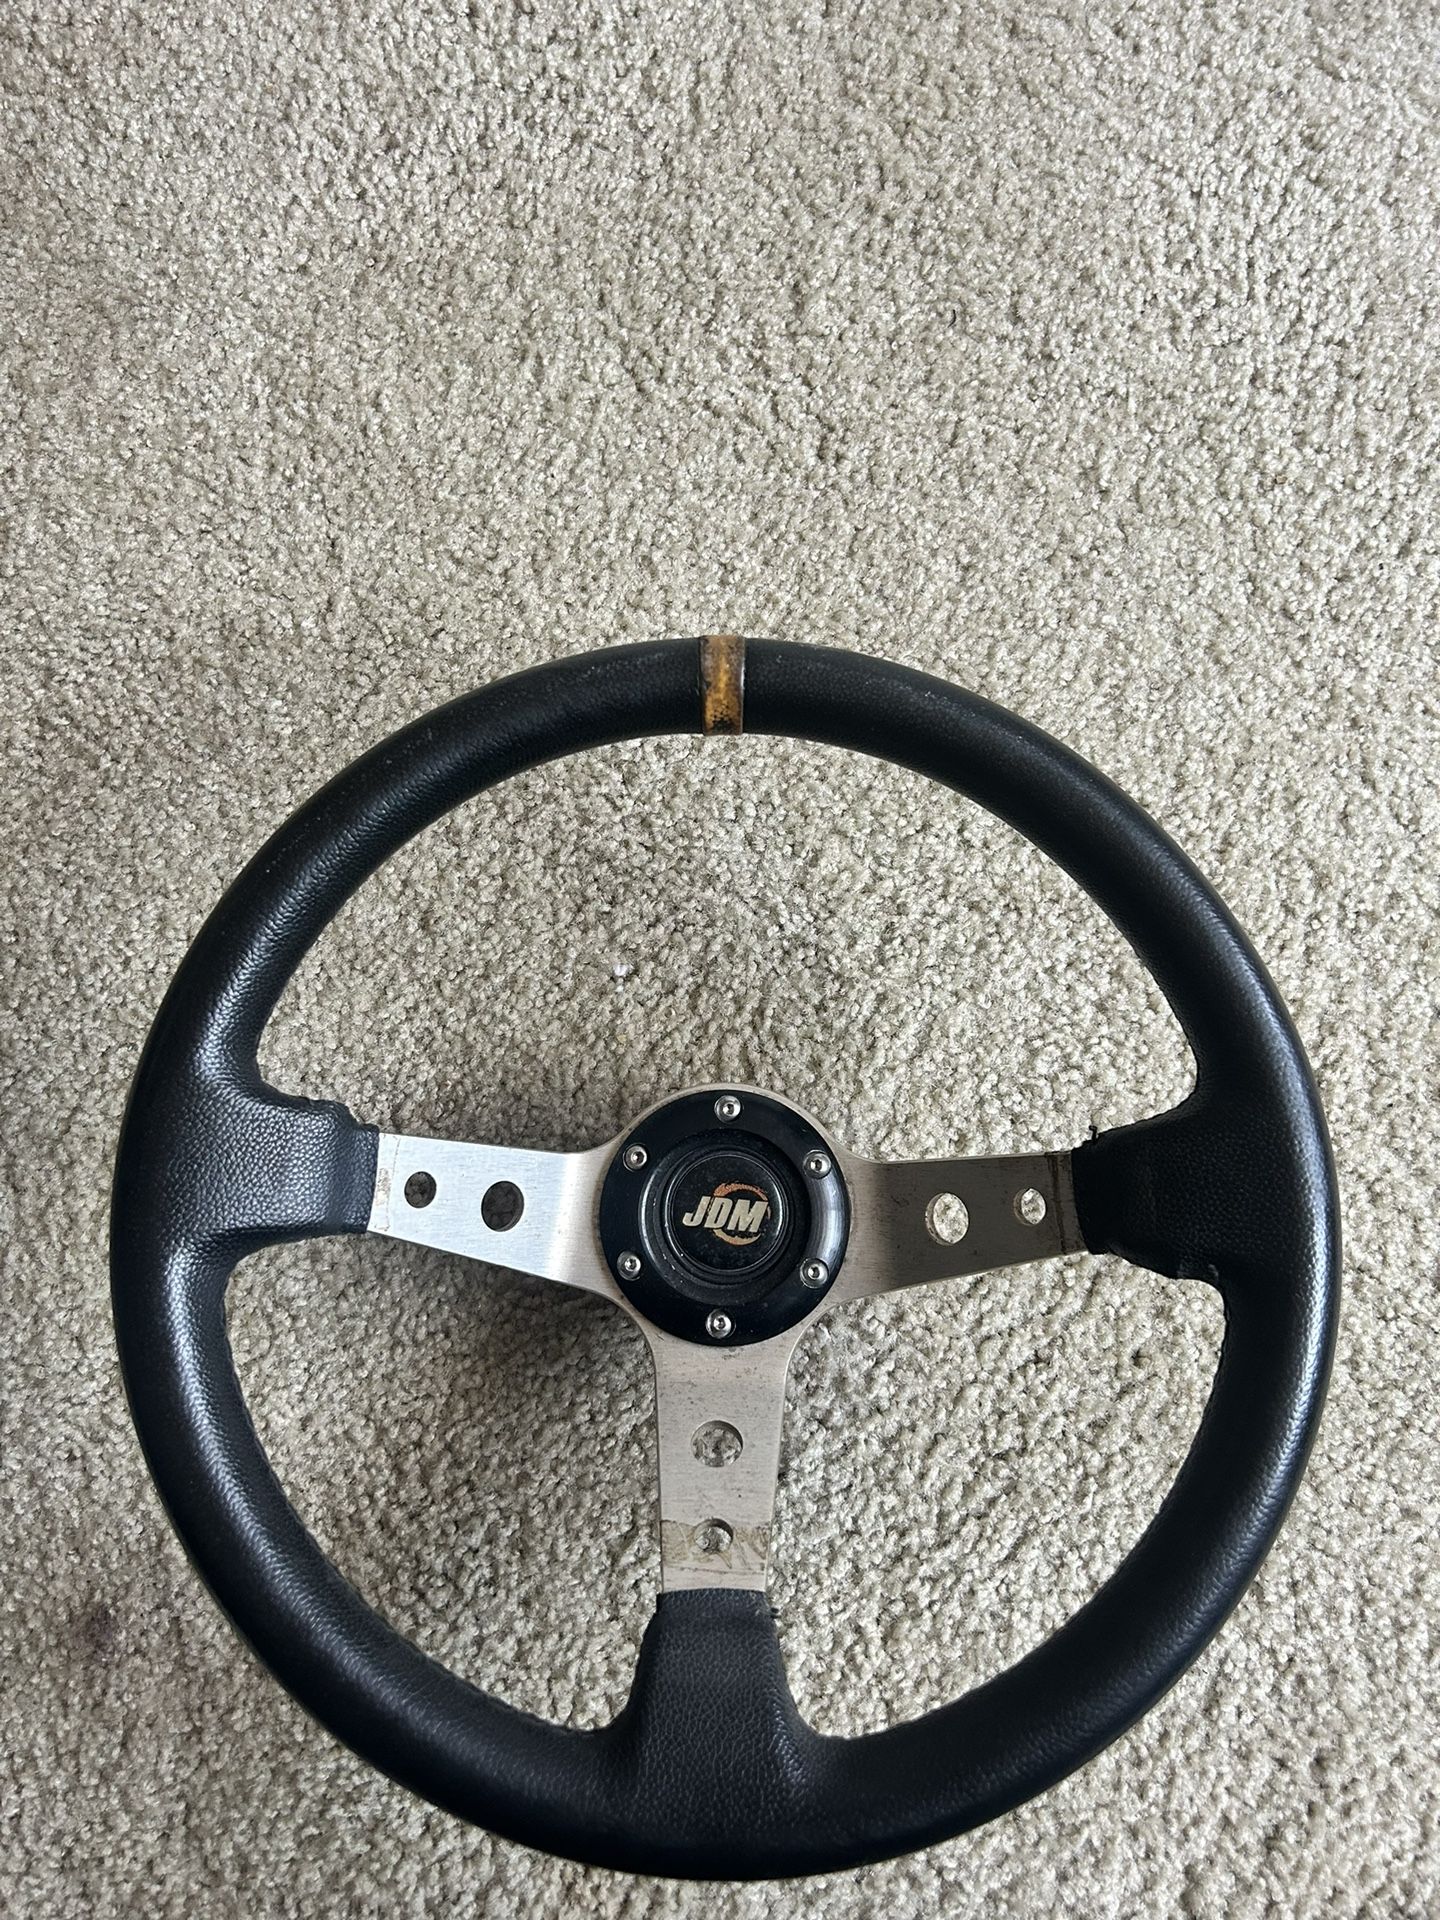 Aftermarket JDM Steering Wheel 